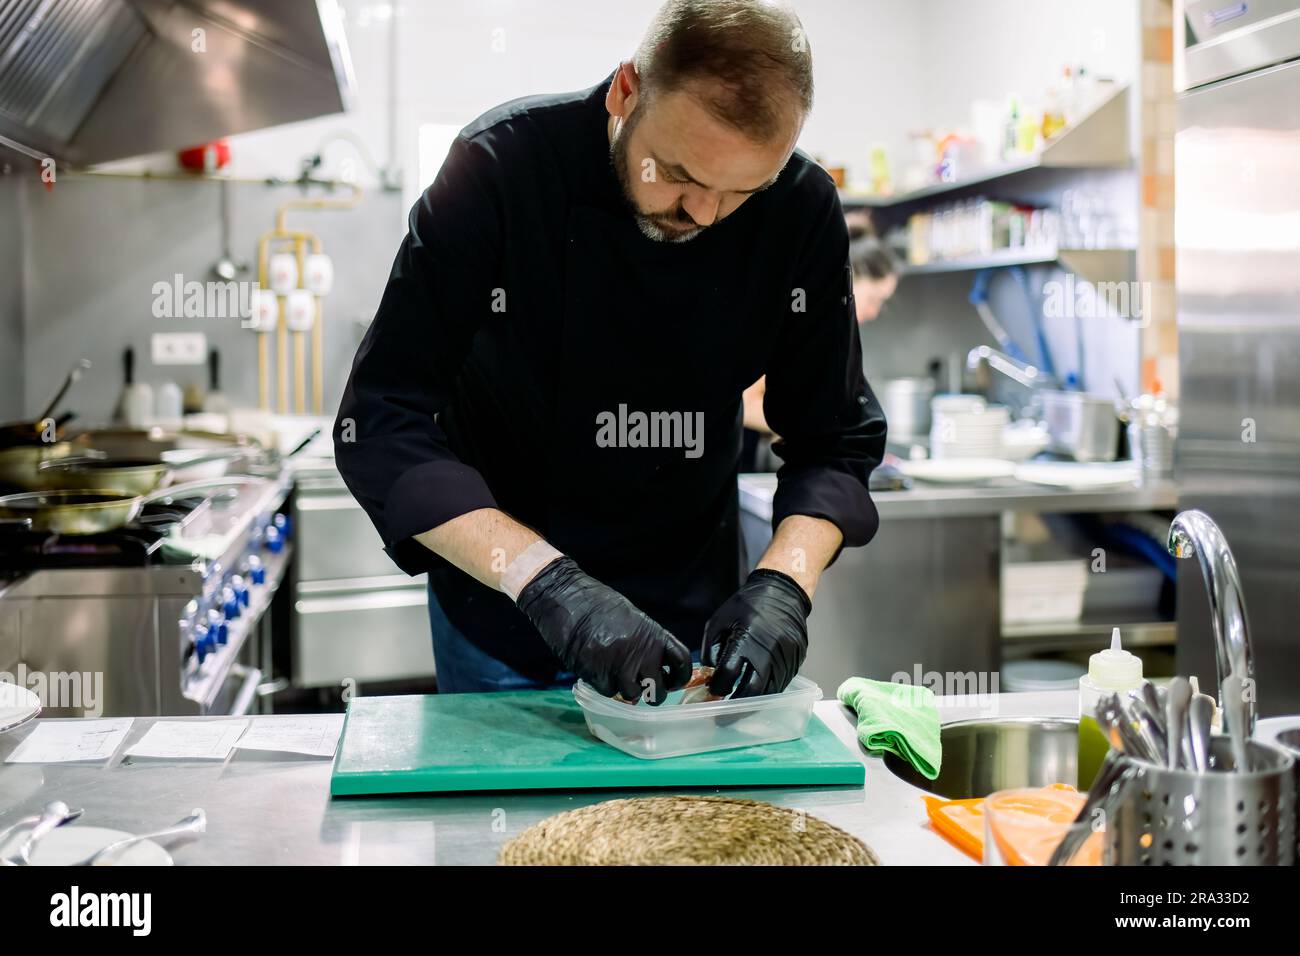 Gruñón etc. Privación Chef profesional masculino barbudo en guantes negros que arraigan la comida  en un recipiente transparente mientras trabaja en la cocina profesional  Fotografía de stock - Alamy